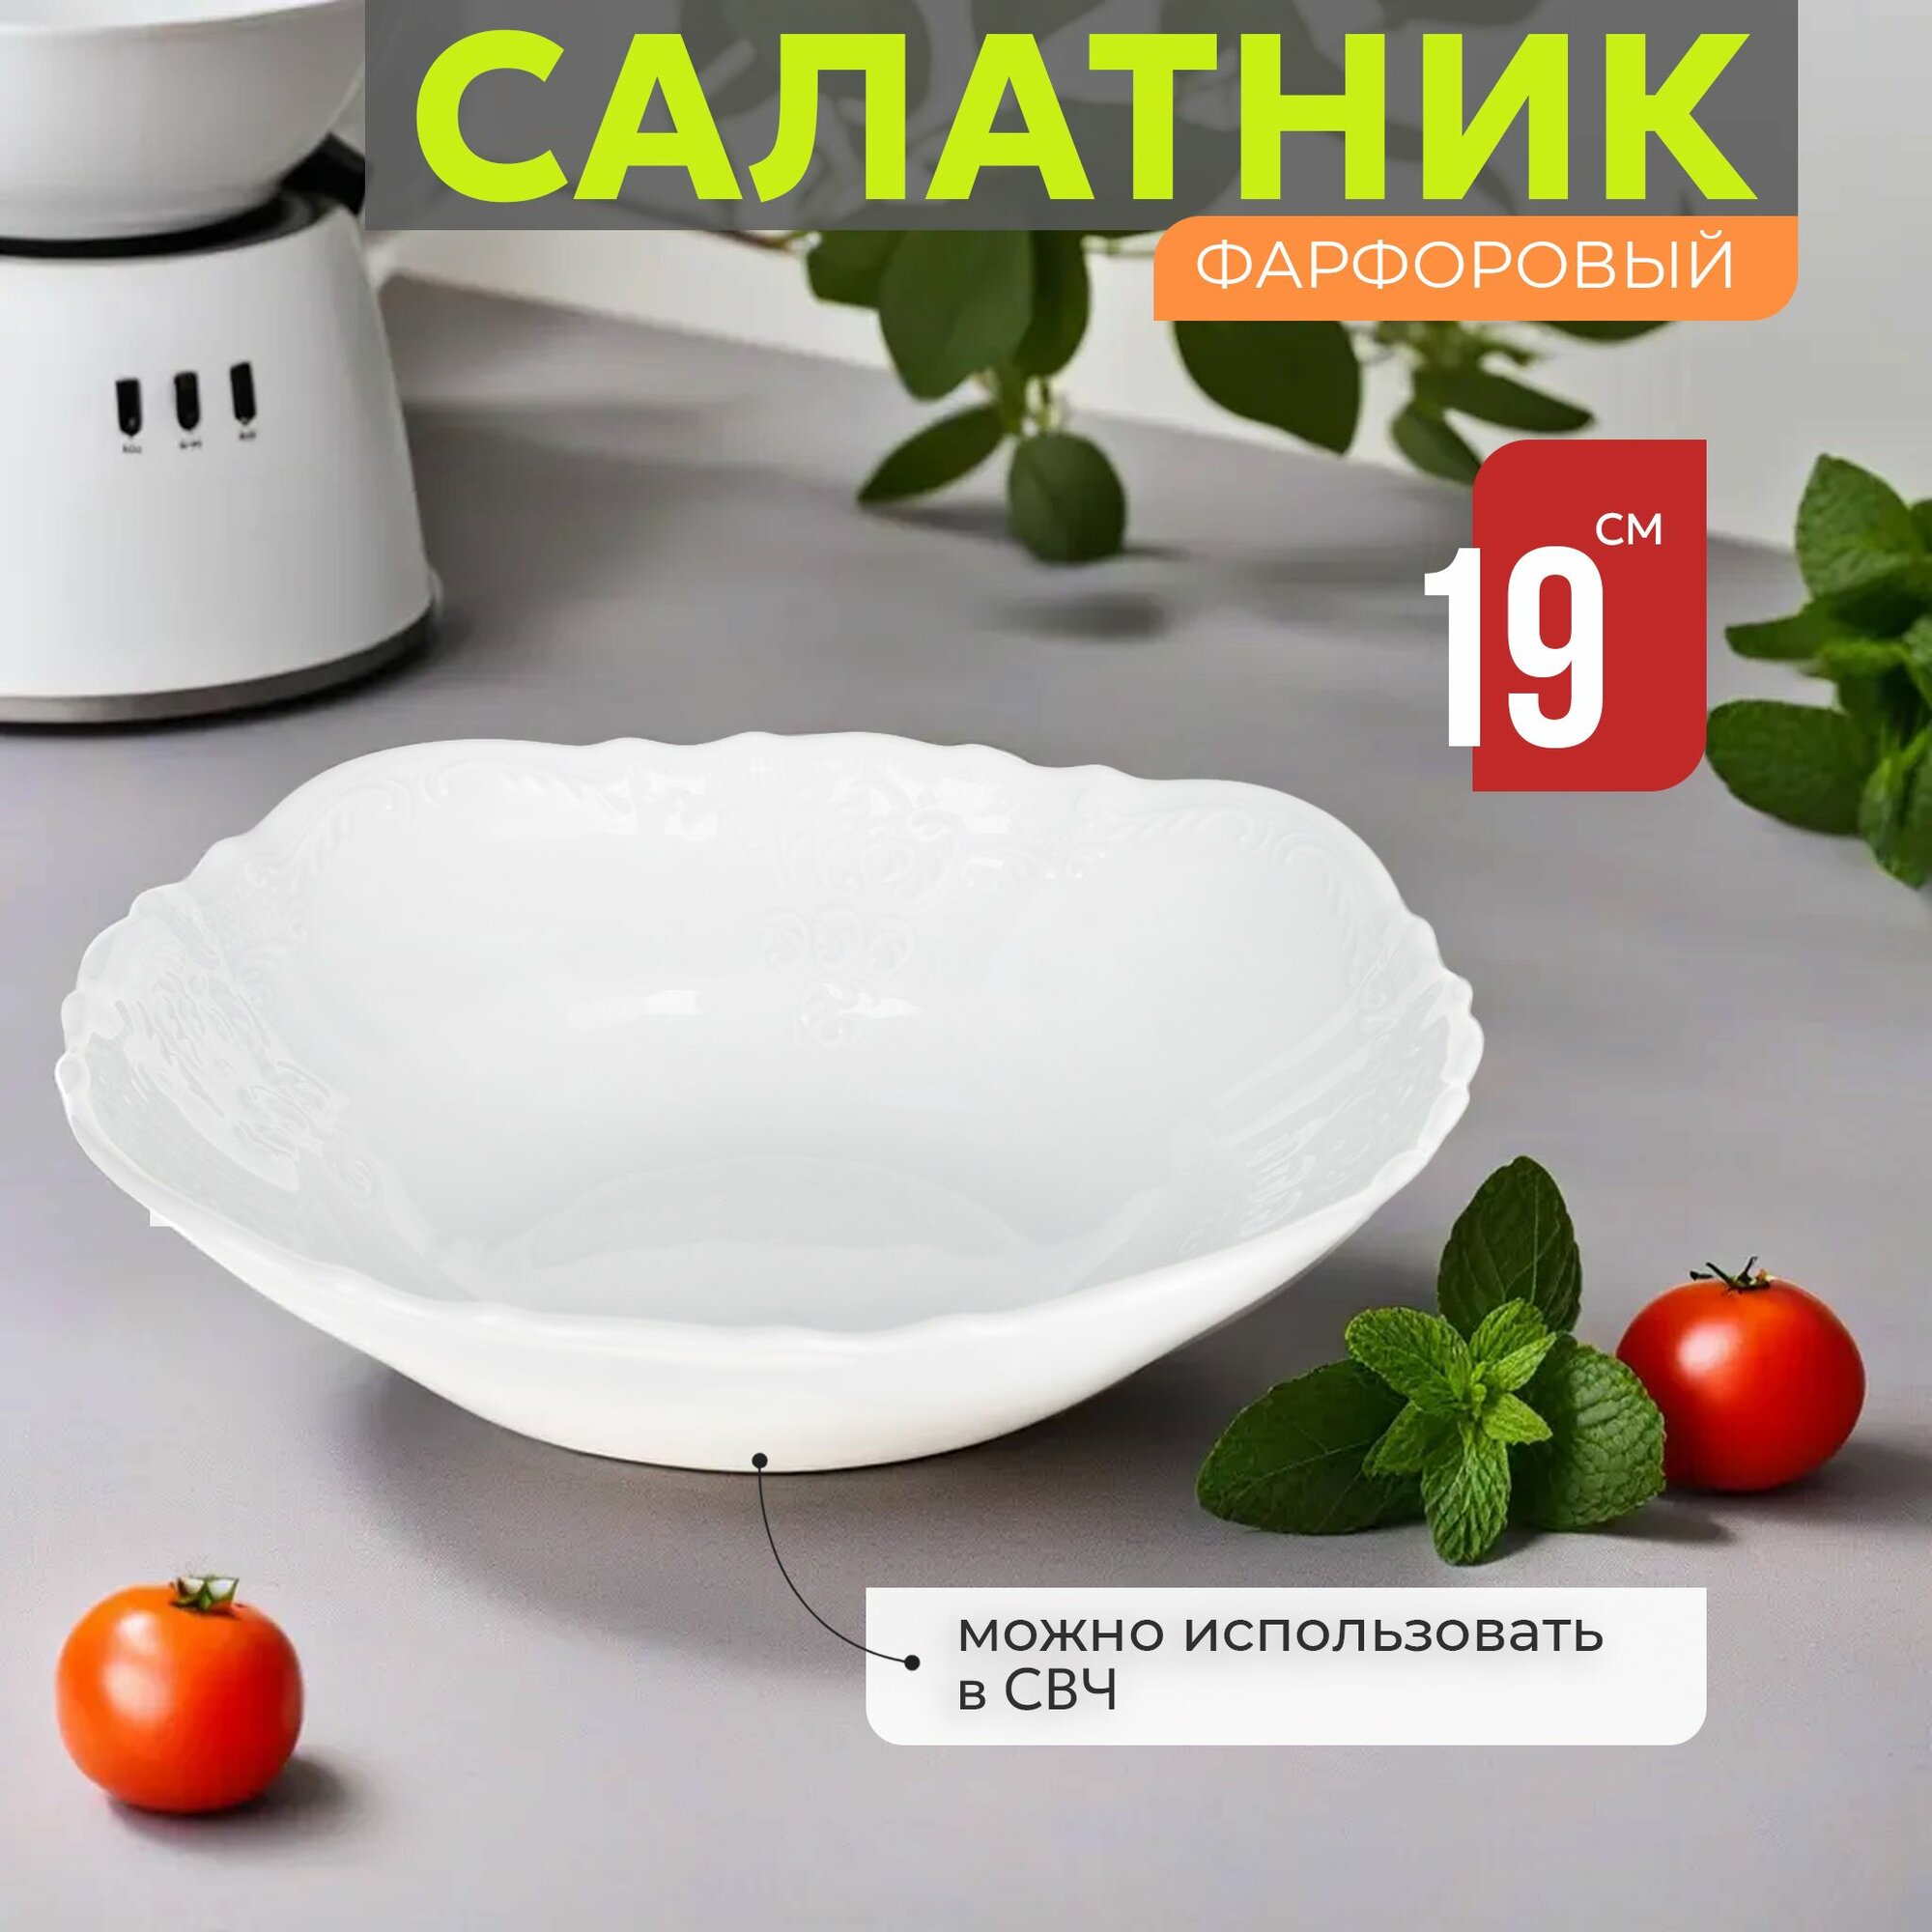 Салатник фарфоровый 19 см Bernadotte Недекорированный, салатница для сервировки стола, тарелка глубокая, белый фарфор, Чехия